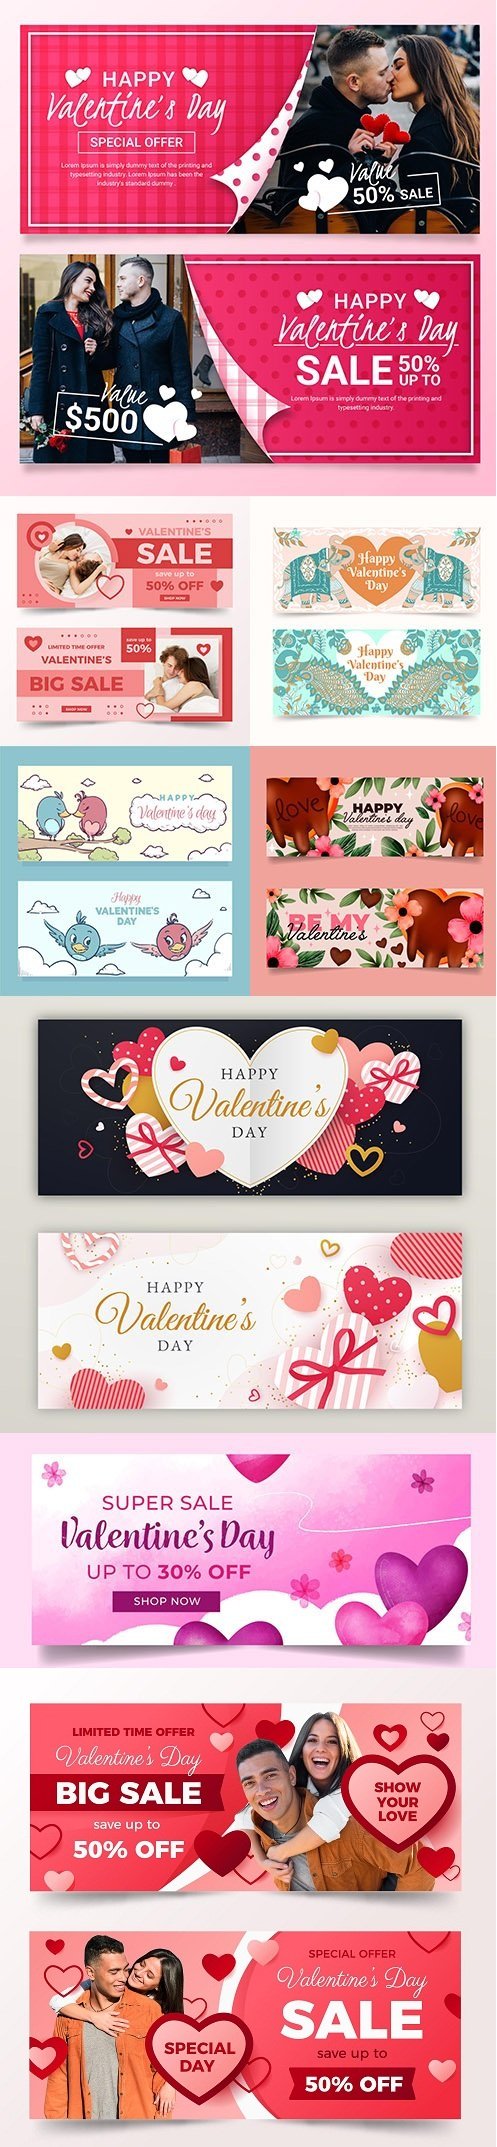 Valentine's Day banner templates 2